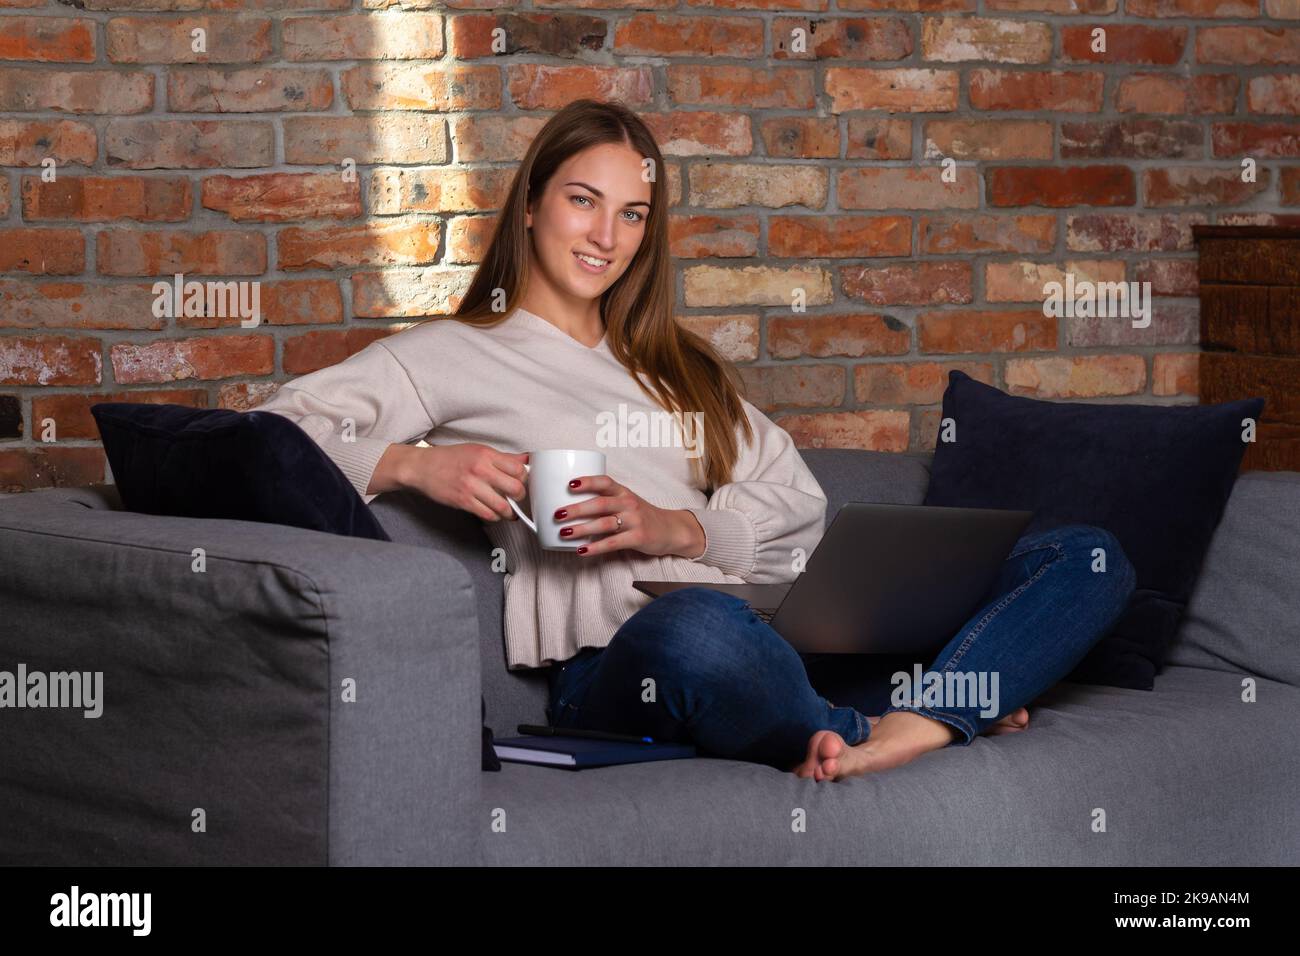 Donna sorridente in un maglione bianco che tiene una tazza bianca con un laptop in grembo e un notebook a lato Foto Stock